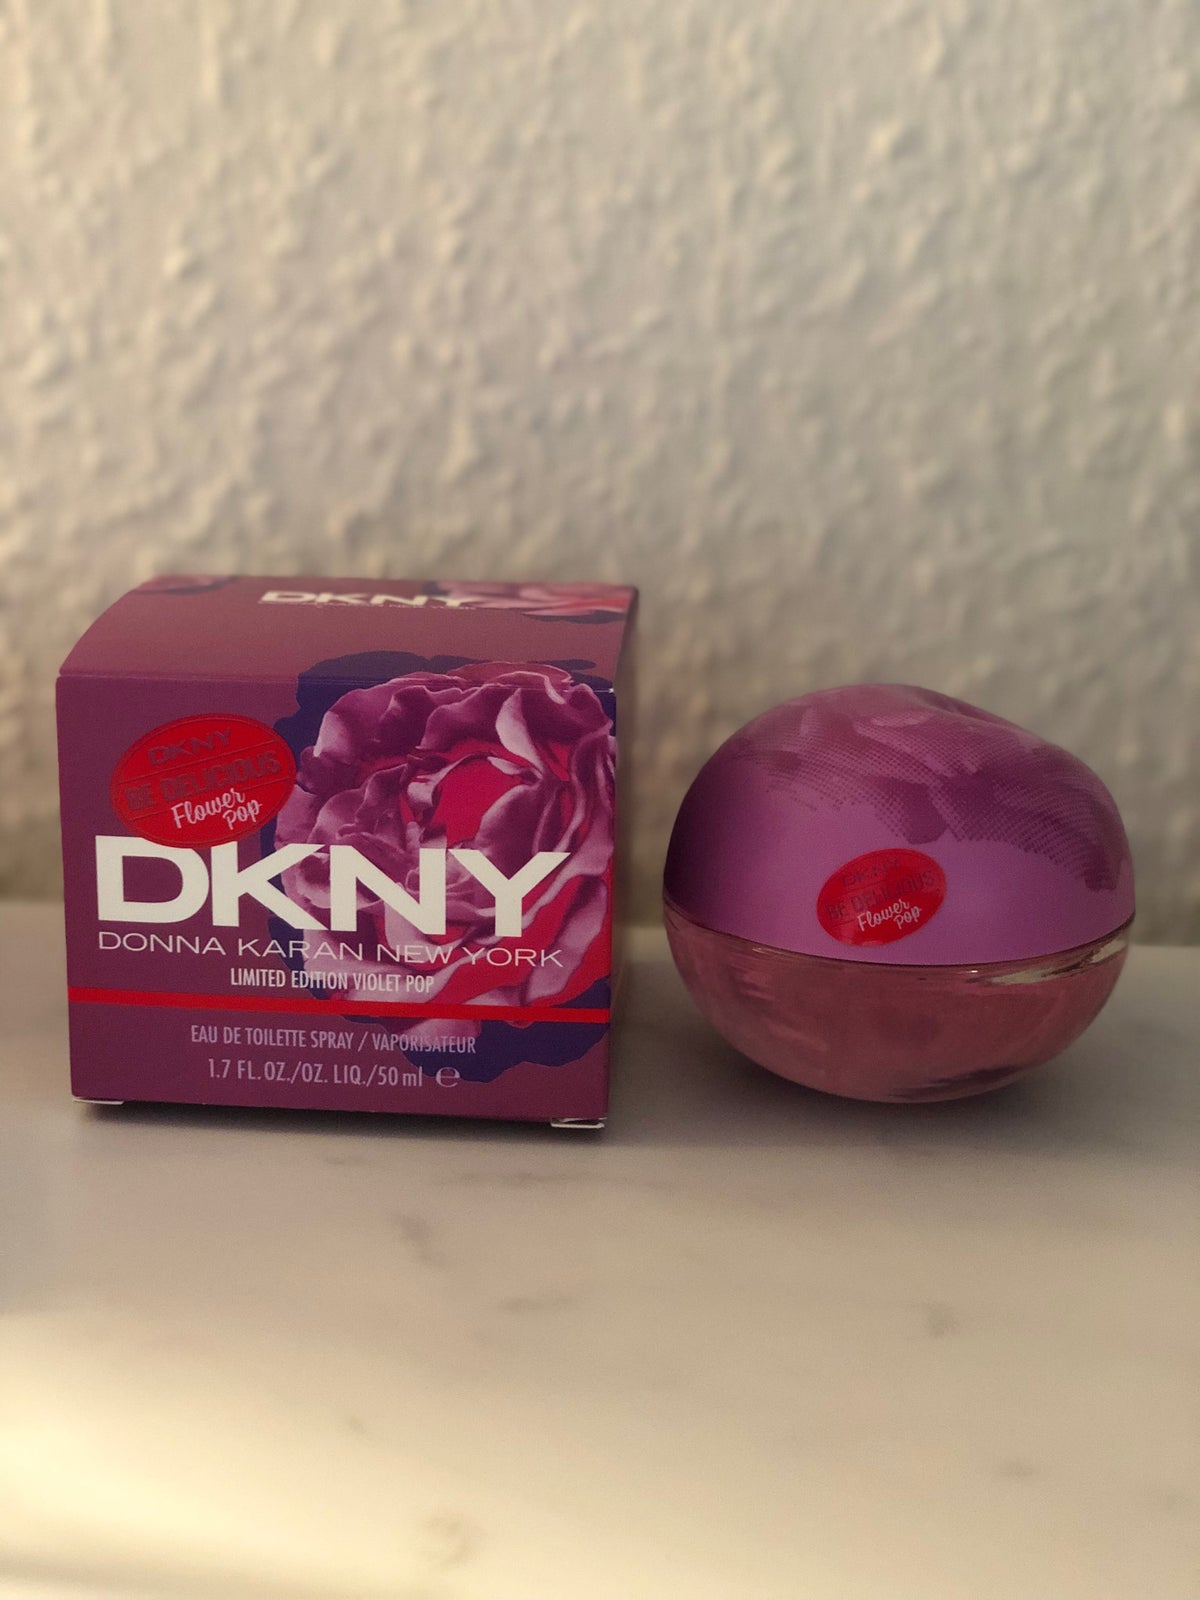 svamp Biskop Tomat Eau de Toilette, DKNY flower pop limited edition violet pop 50m ed, DKNY  Donna Karan – dba.dk – Køb og Salg af Nyt og Brugt